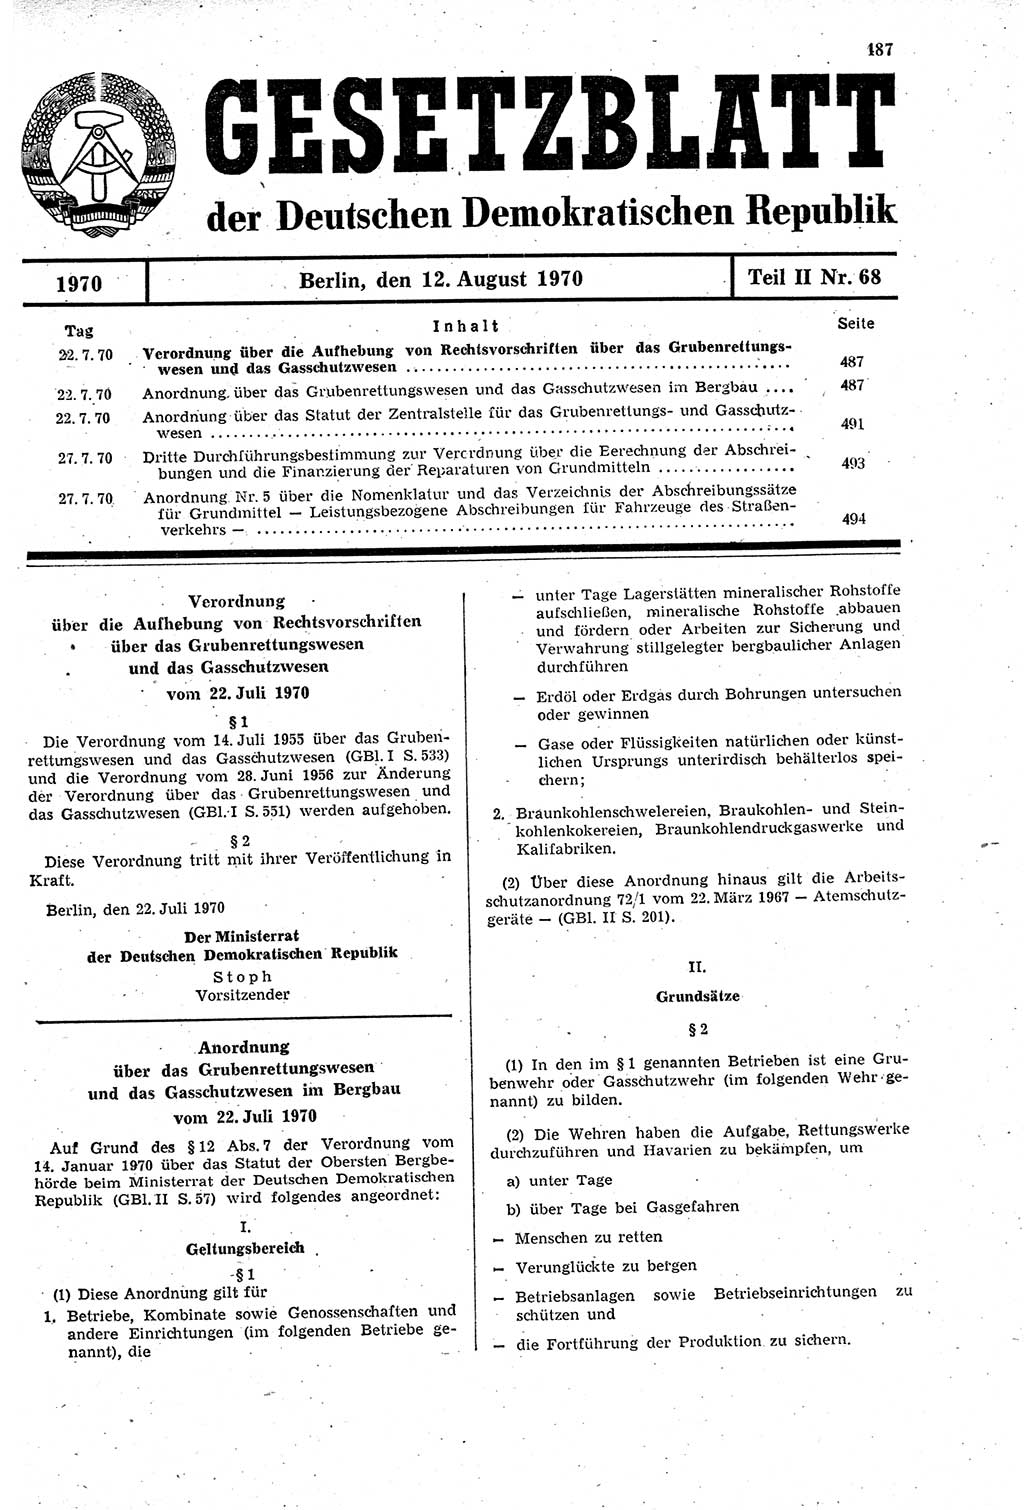 Gesetzblatt (GBl.) der Deutschen Demokratischen Republik (DDR) Teil ⅠⅠ 1970, Seite 487 (GBl. DDR ⅠⅠ 1970, S. 487)